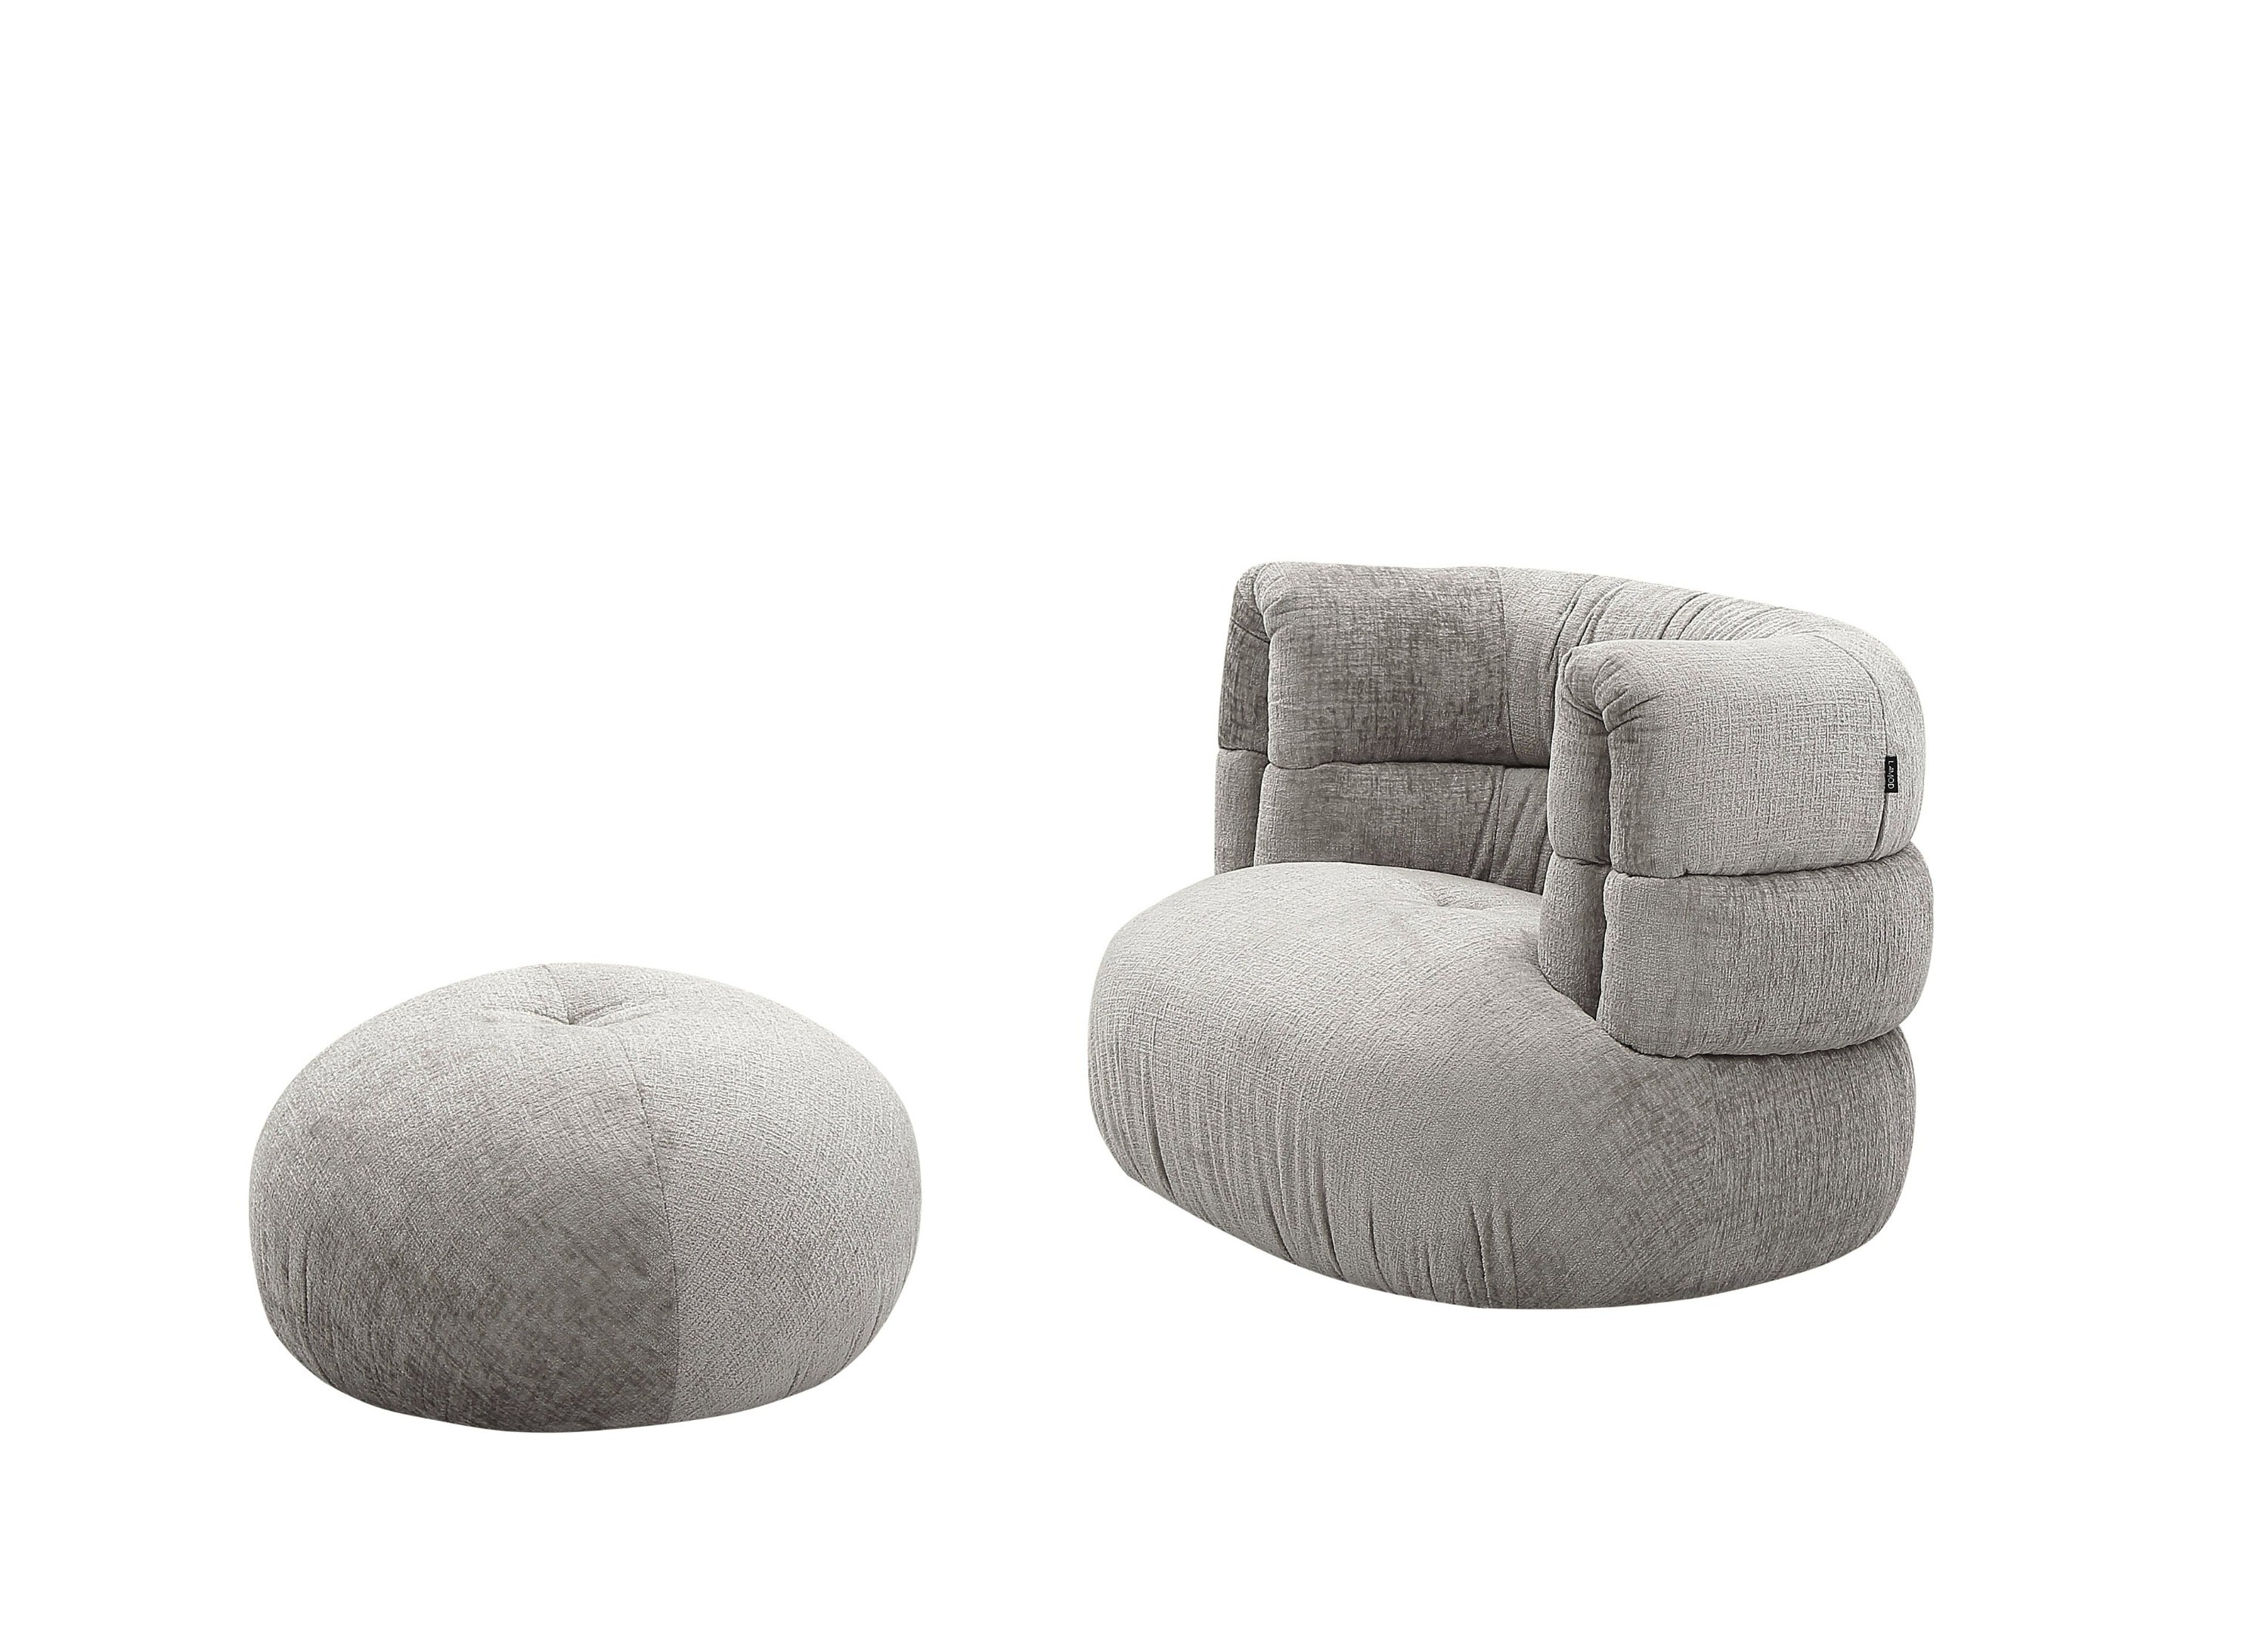 Divani Casa Shay - Modern Fabric Accent Chair + Ottoman-Accent Chair-VIG-Wall2Wall Furnishings